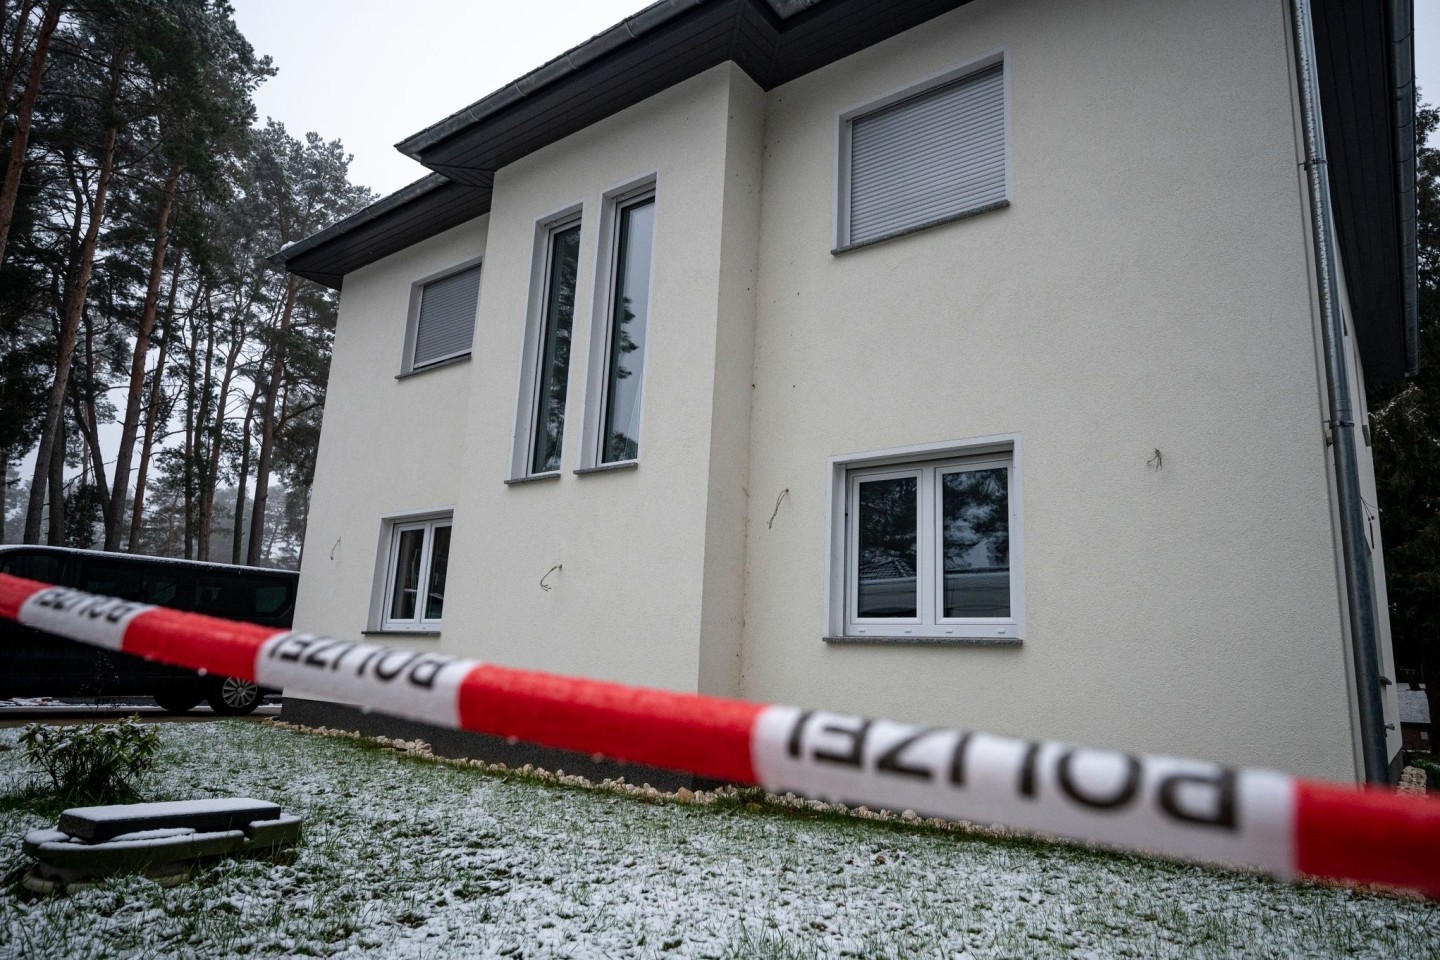 Das Einfamilienhaus in Senzig, einem Ortsteil der Stadt Königs Wusterhausen im Landkreis Dahme-Spreewald, ist abgesperrt. Die Polizei hat dort fünf Tote in einem Wohnhaus gefunden.